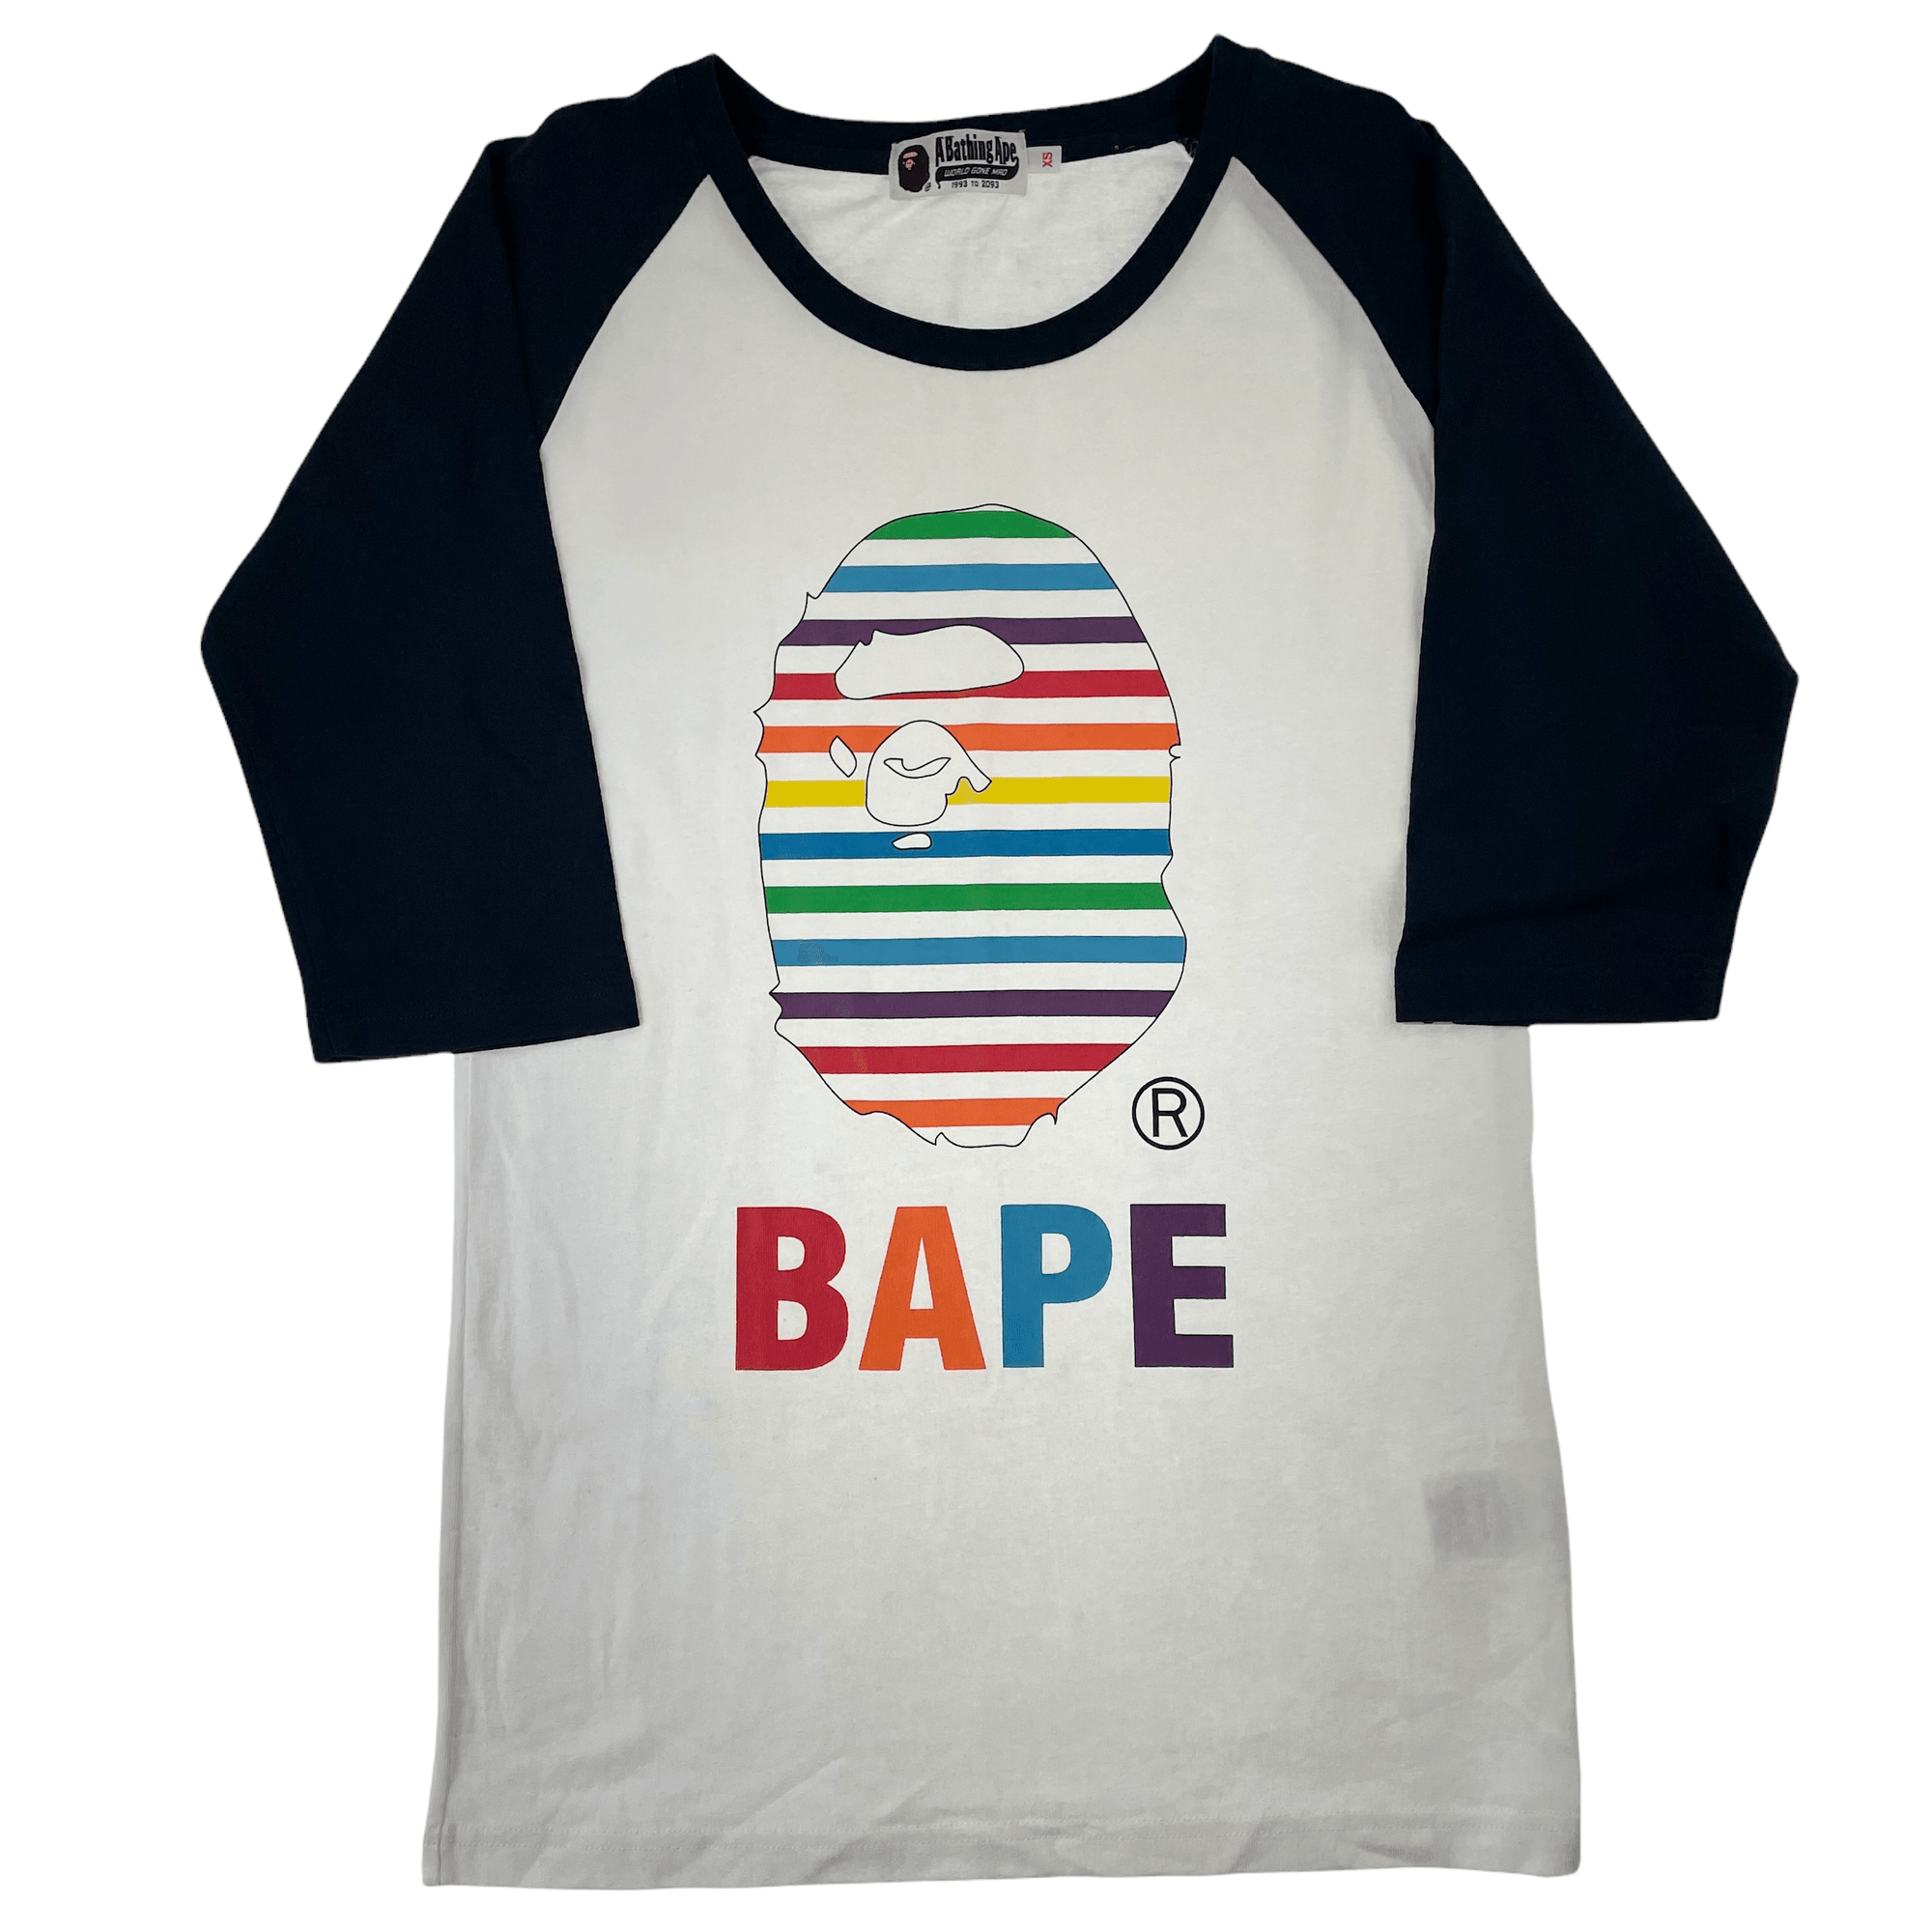 Bape logo t shirt women’s size XS - second wave vintage store